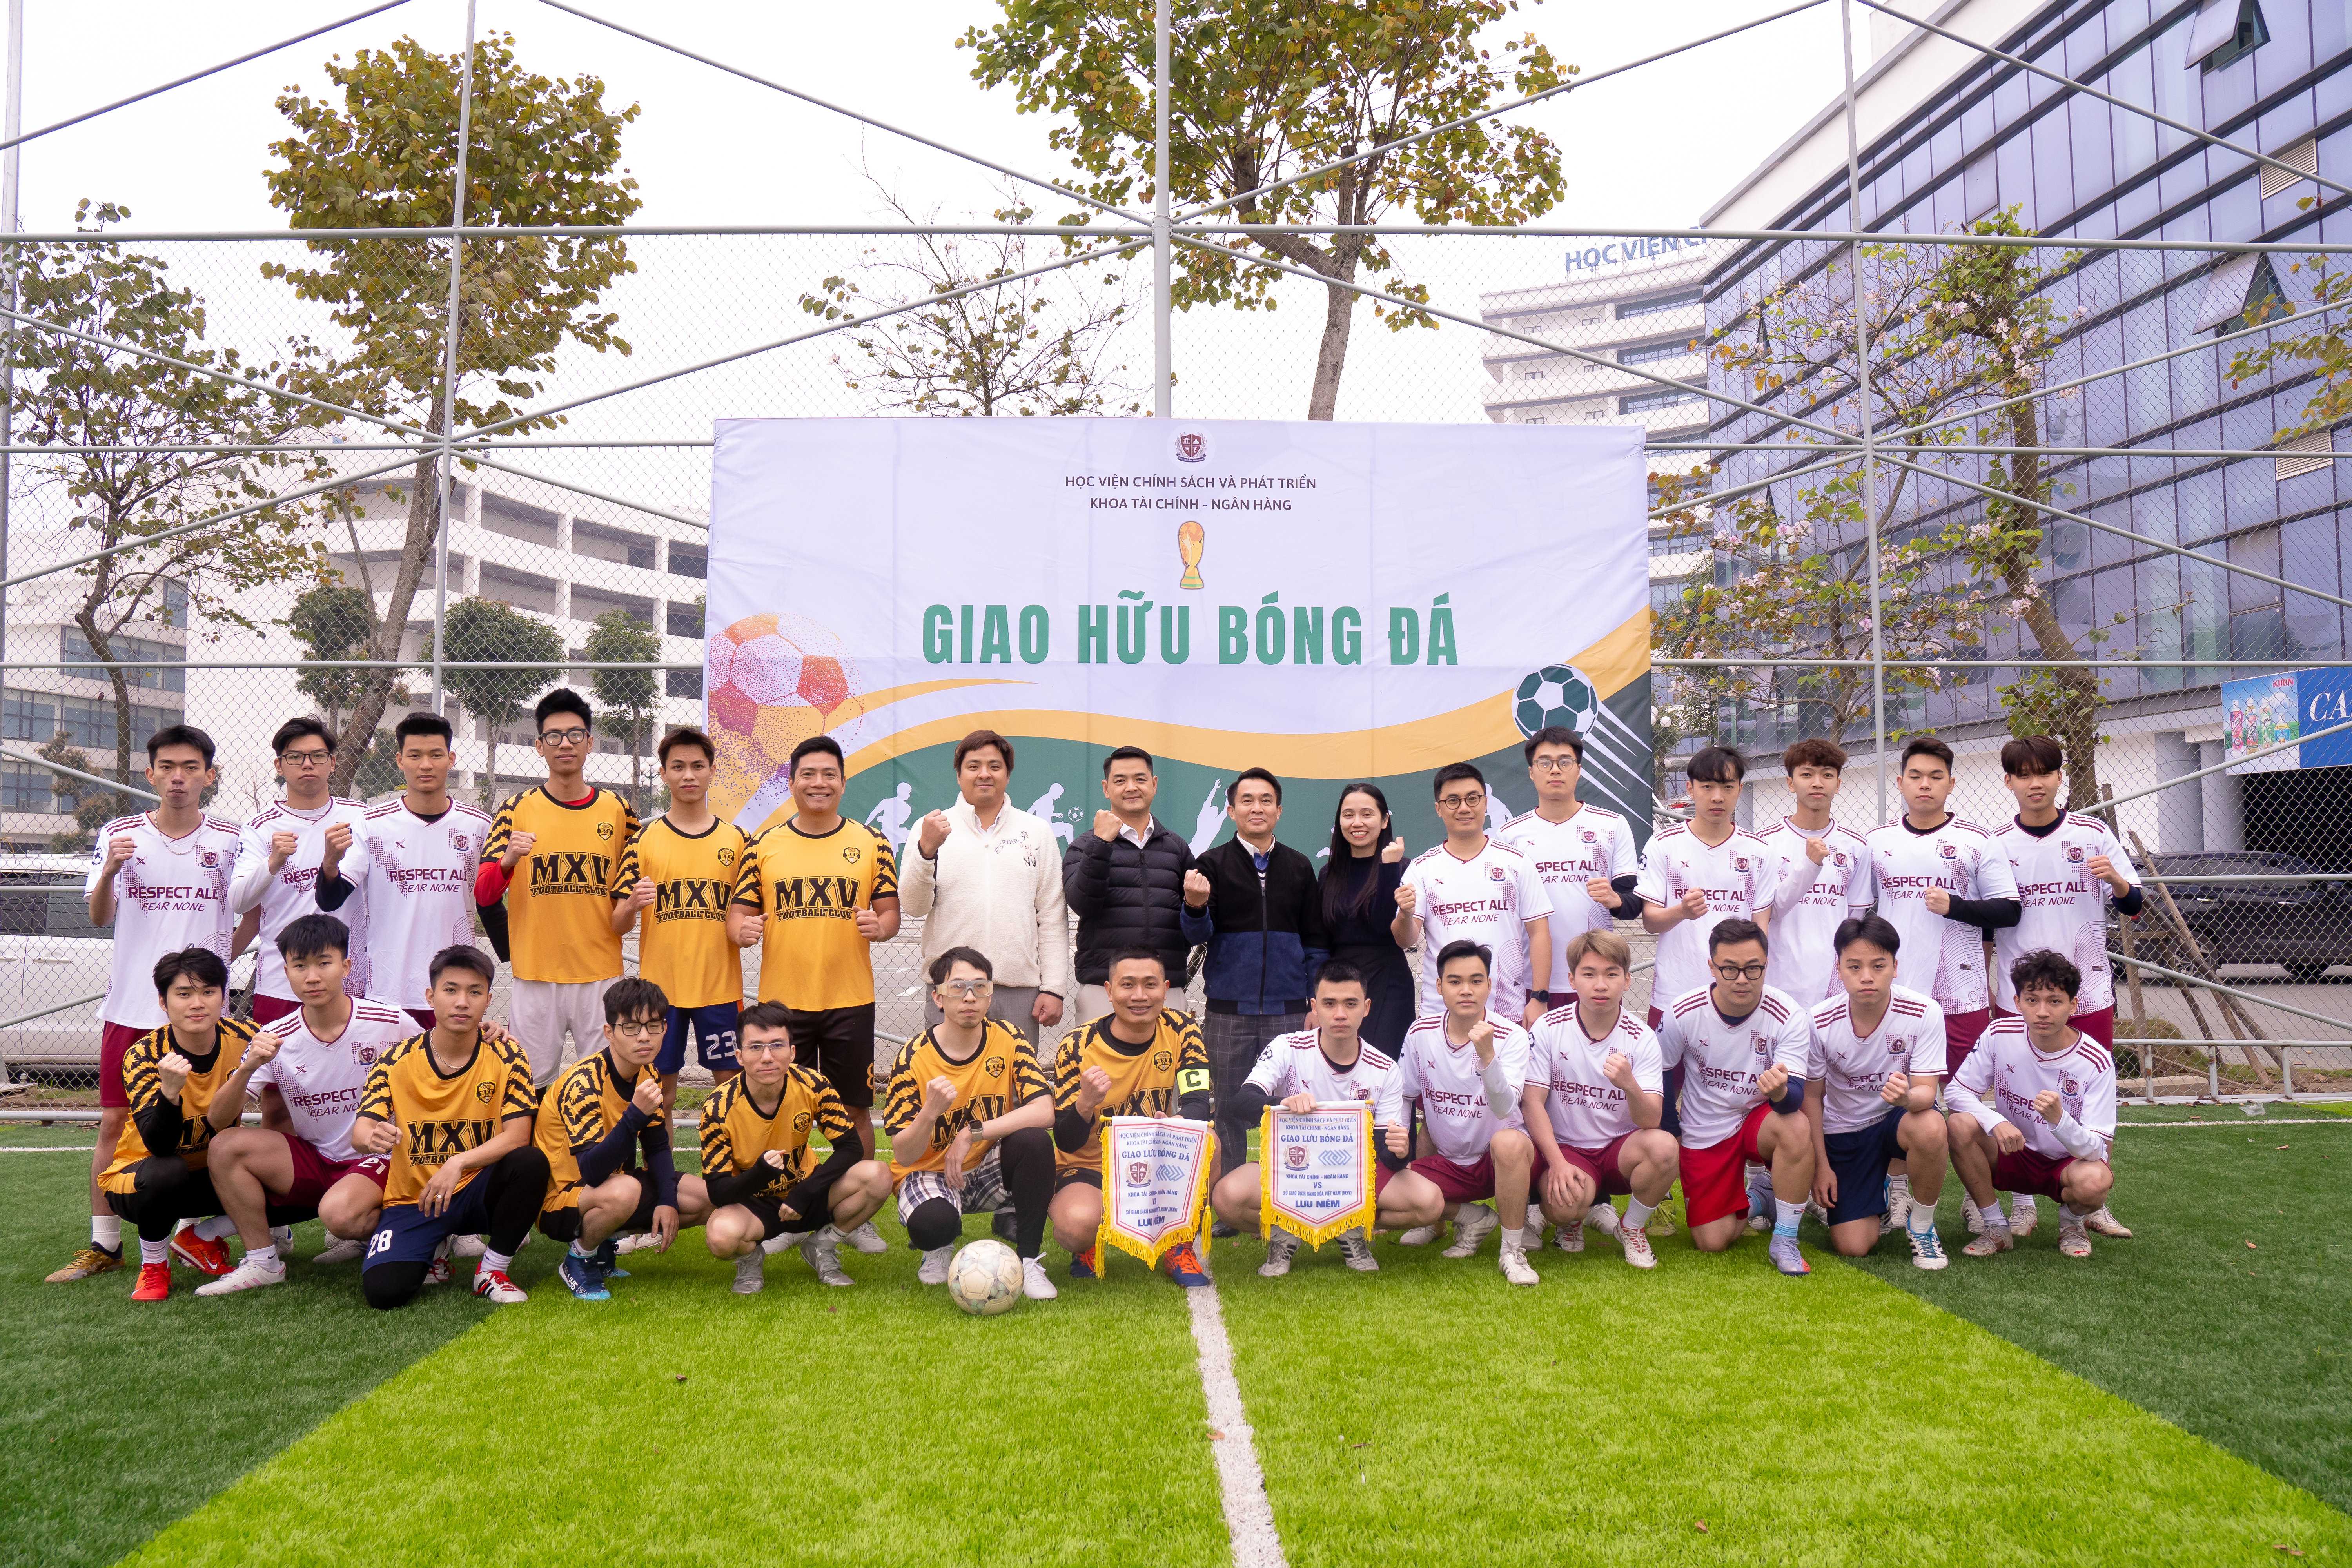 Giao hữu bóng đá giữa MXV cùng Học Viện Chính sách và Phát triển